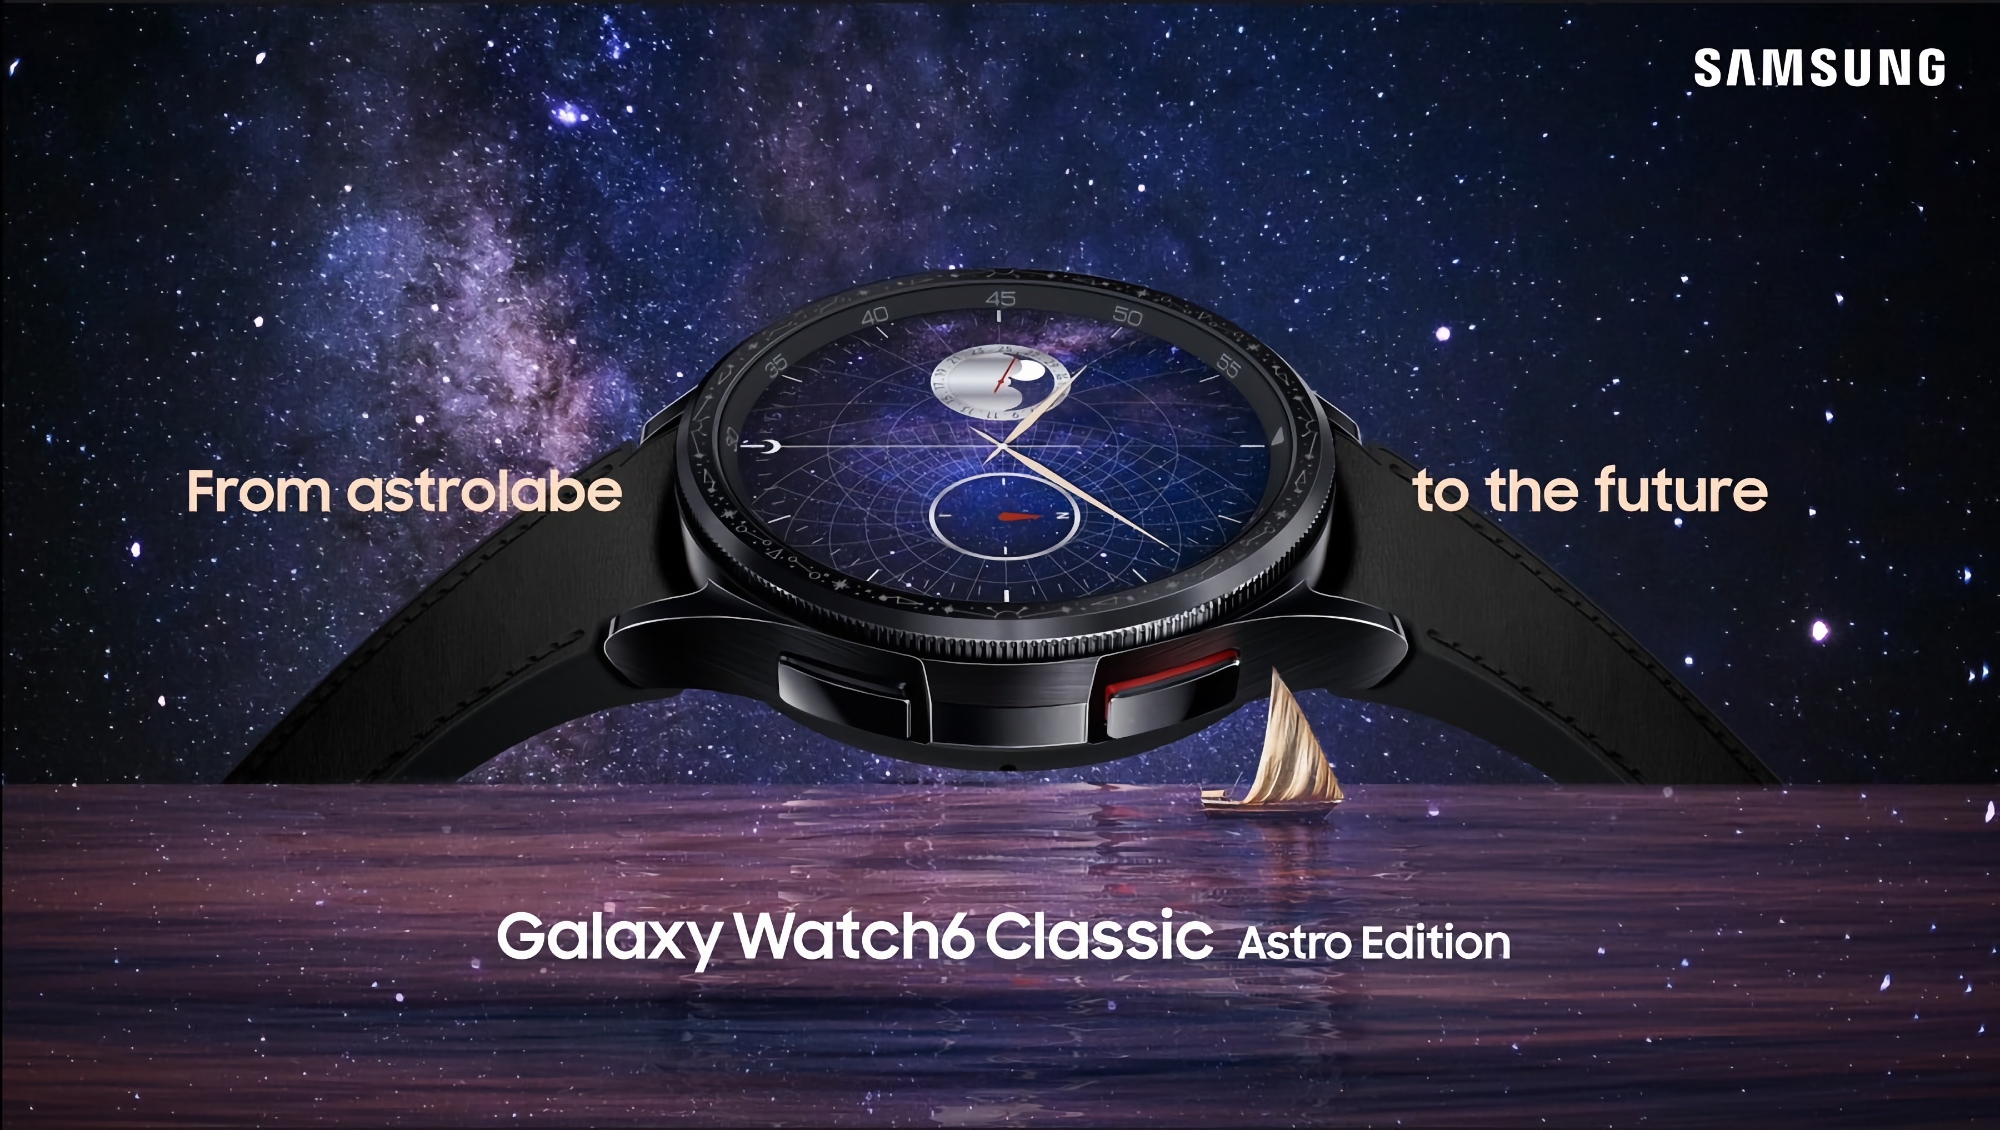 Samsung har lanserat en specialversion av Galaxy Watch 6 Classic Astro Edition med en astrolabiumformad ram